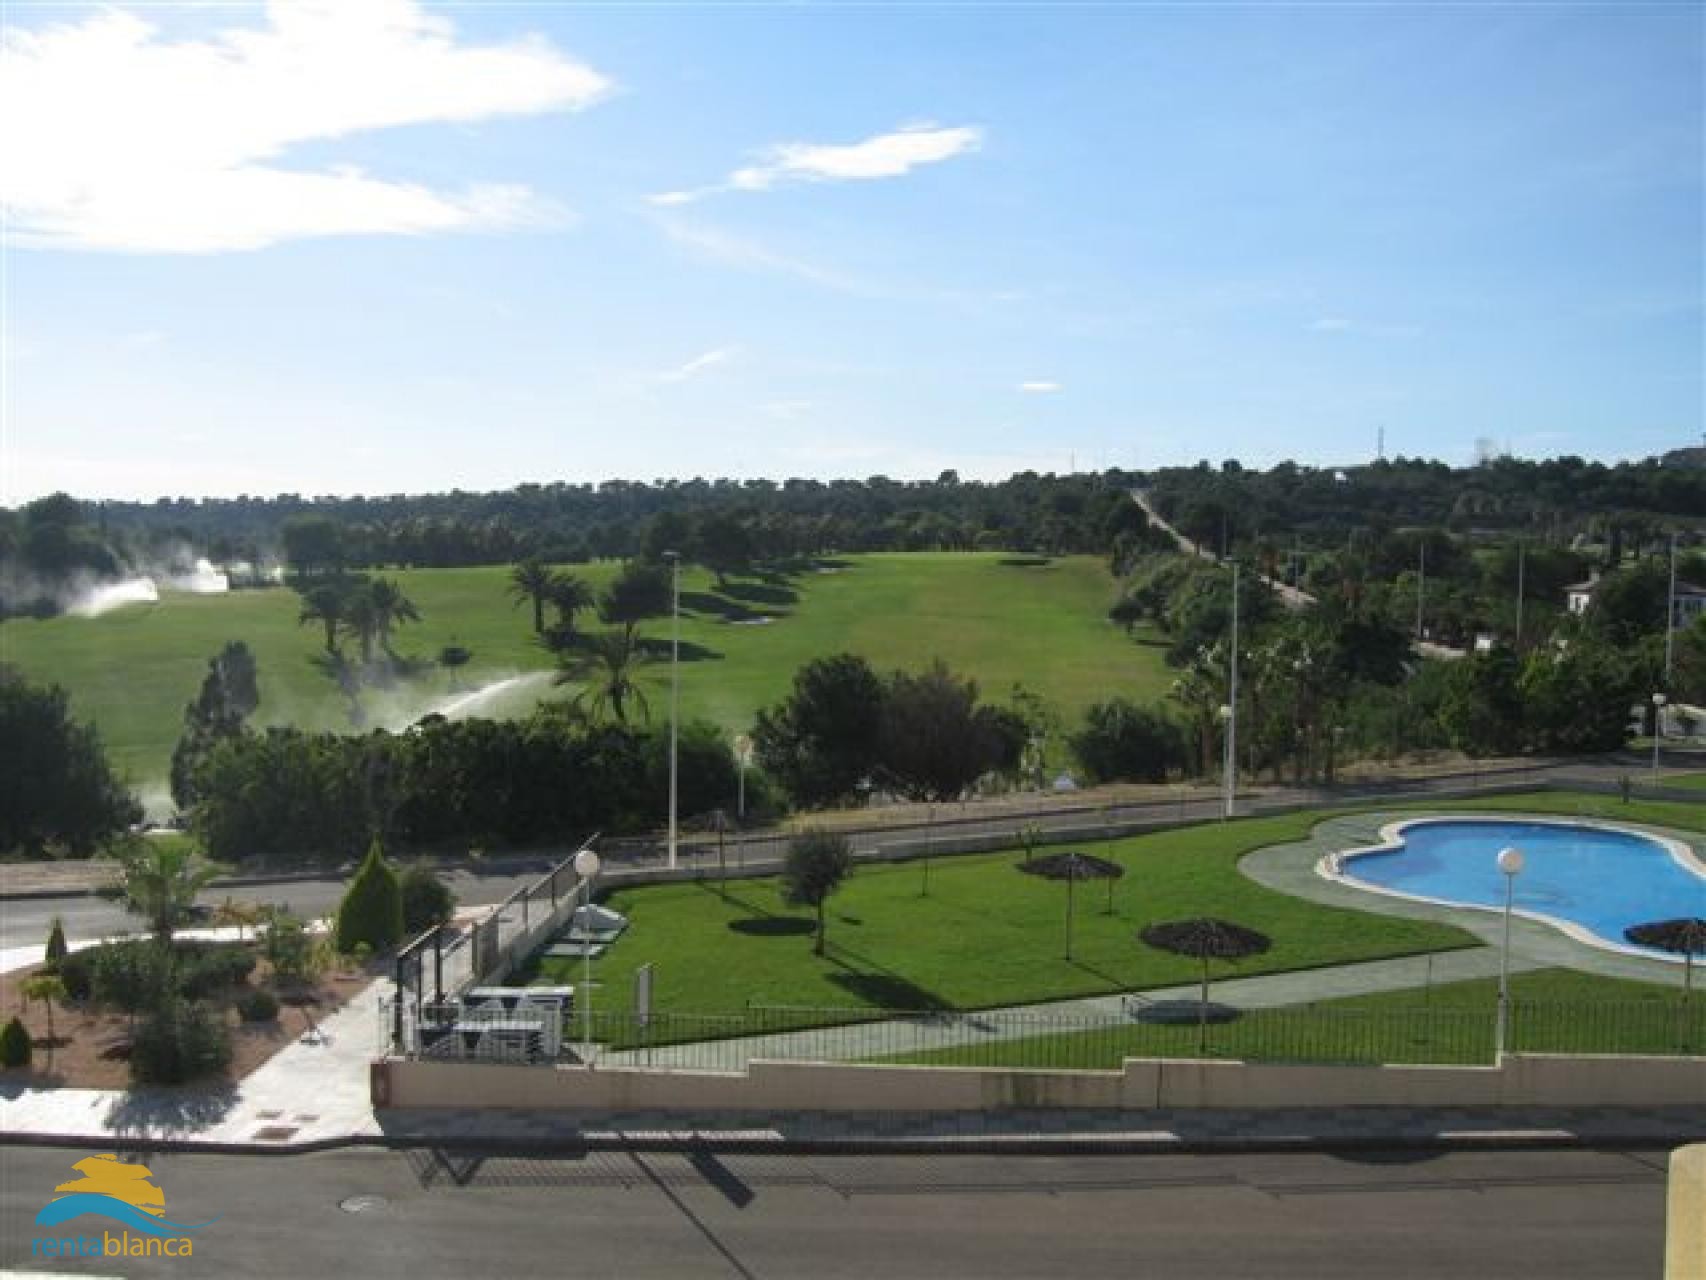 Appartement golfbaan - Lomas de Campoamor - Rentablanca